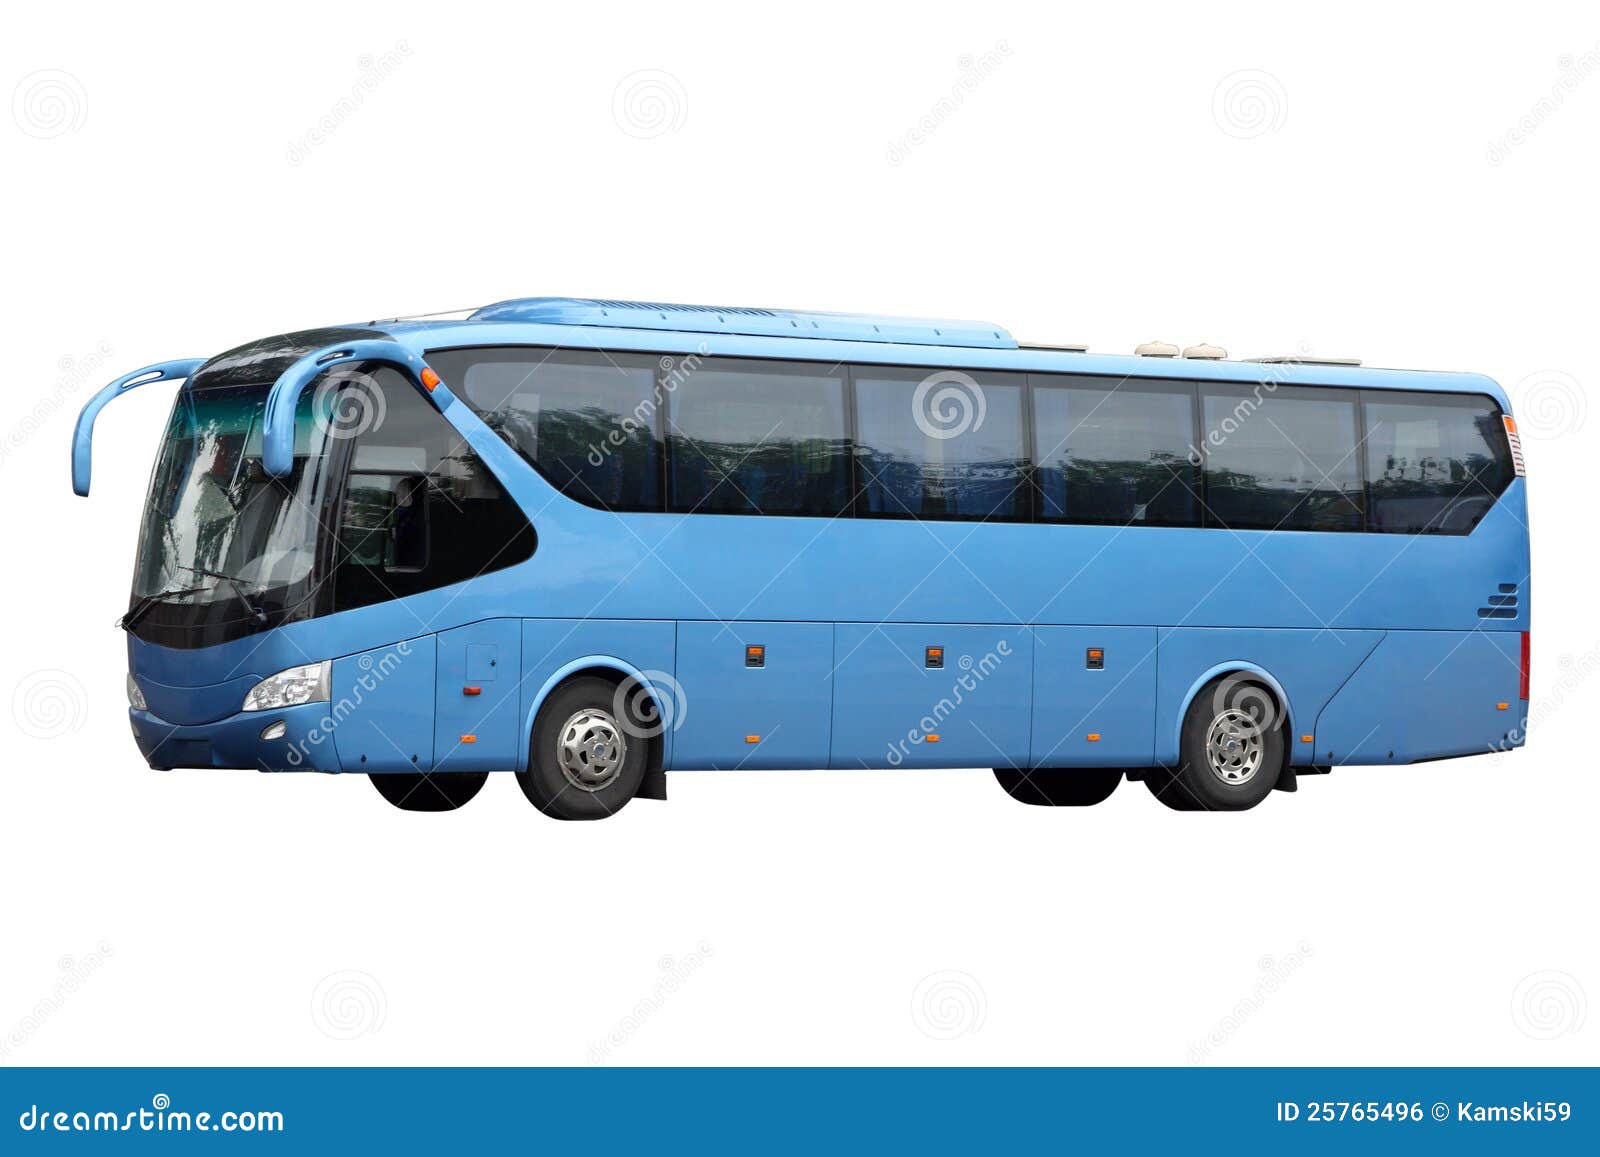 the dark blue excursion bus